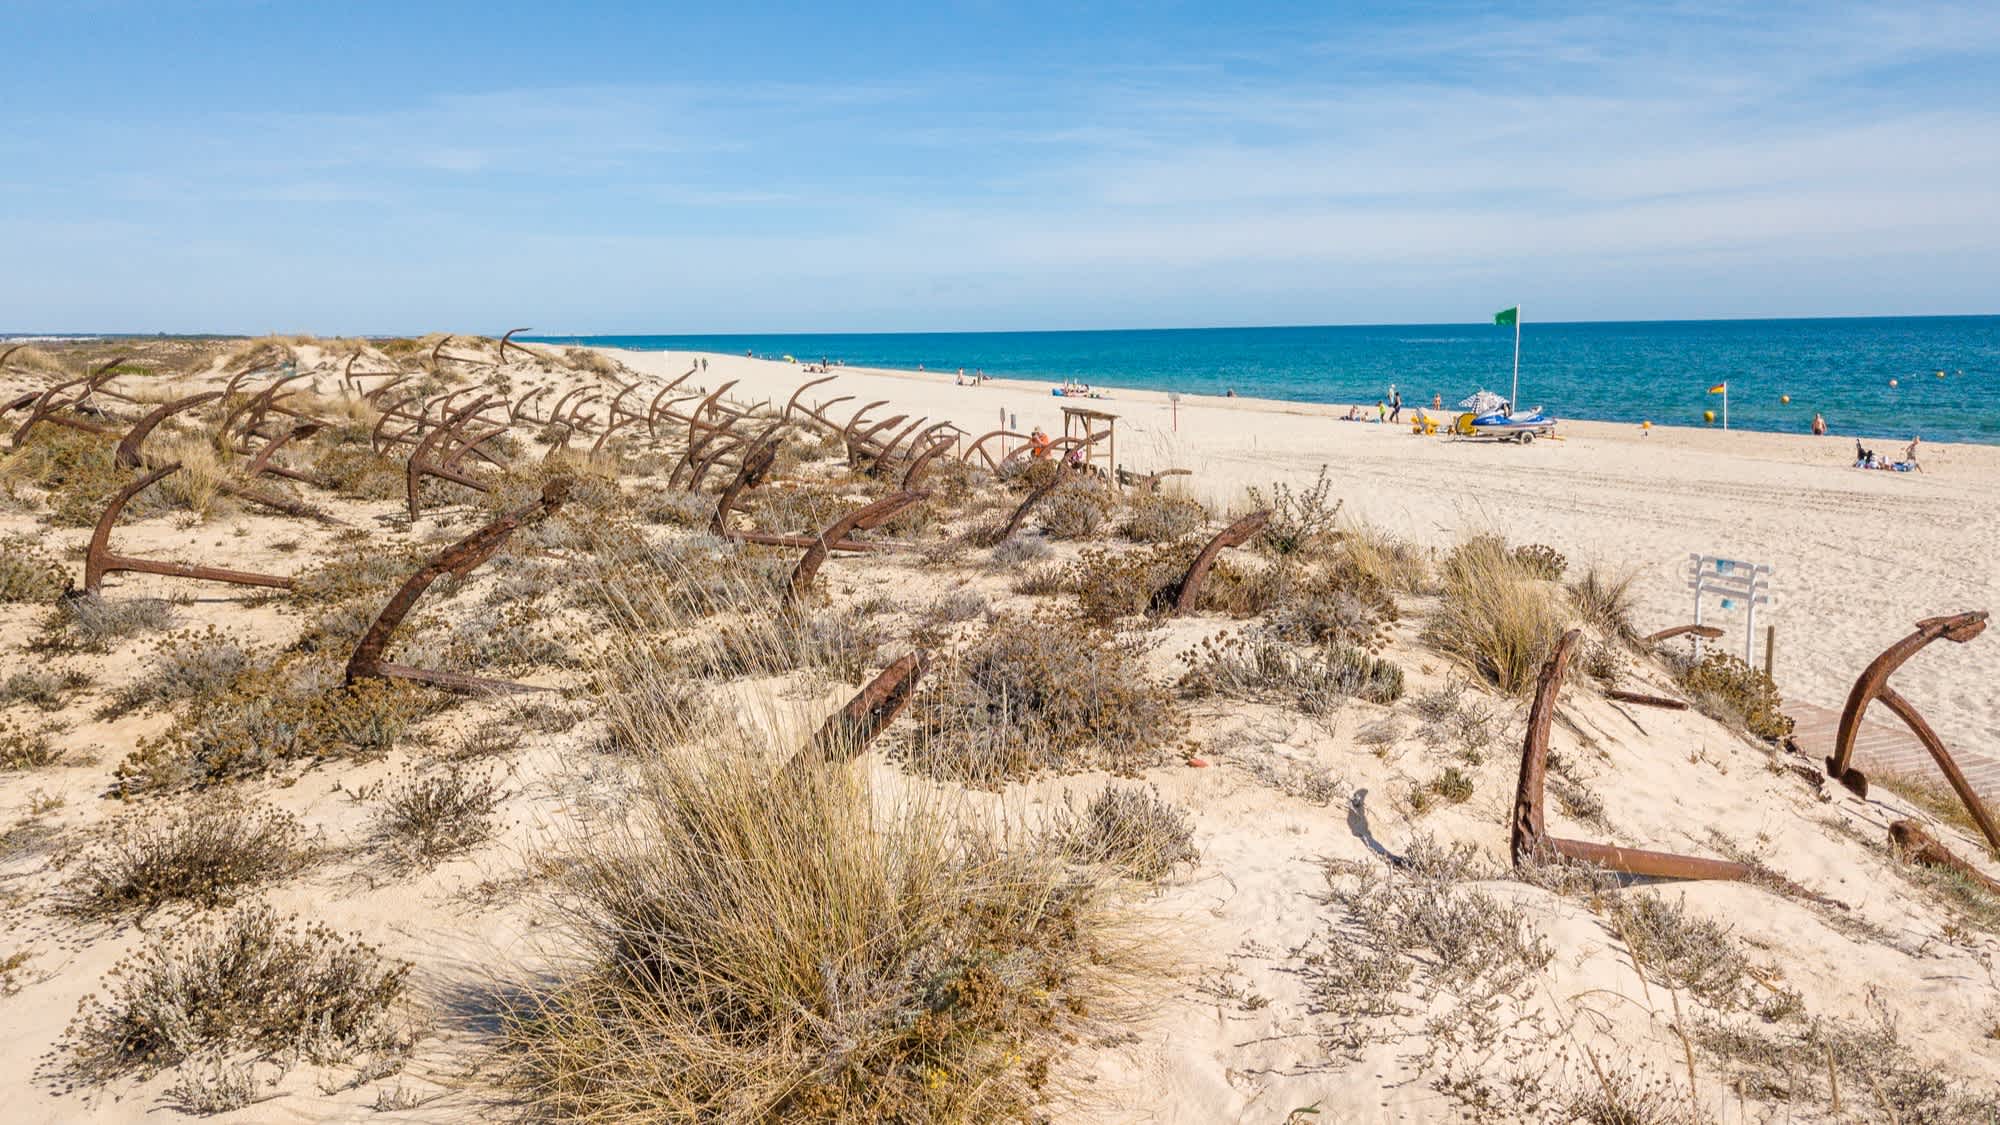 Dunes de sable blanc au bord de l'eau claire sur la plage de Barril au Portugal